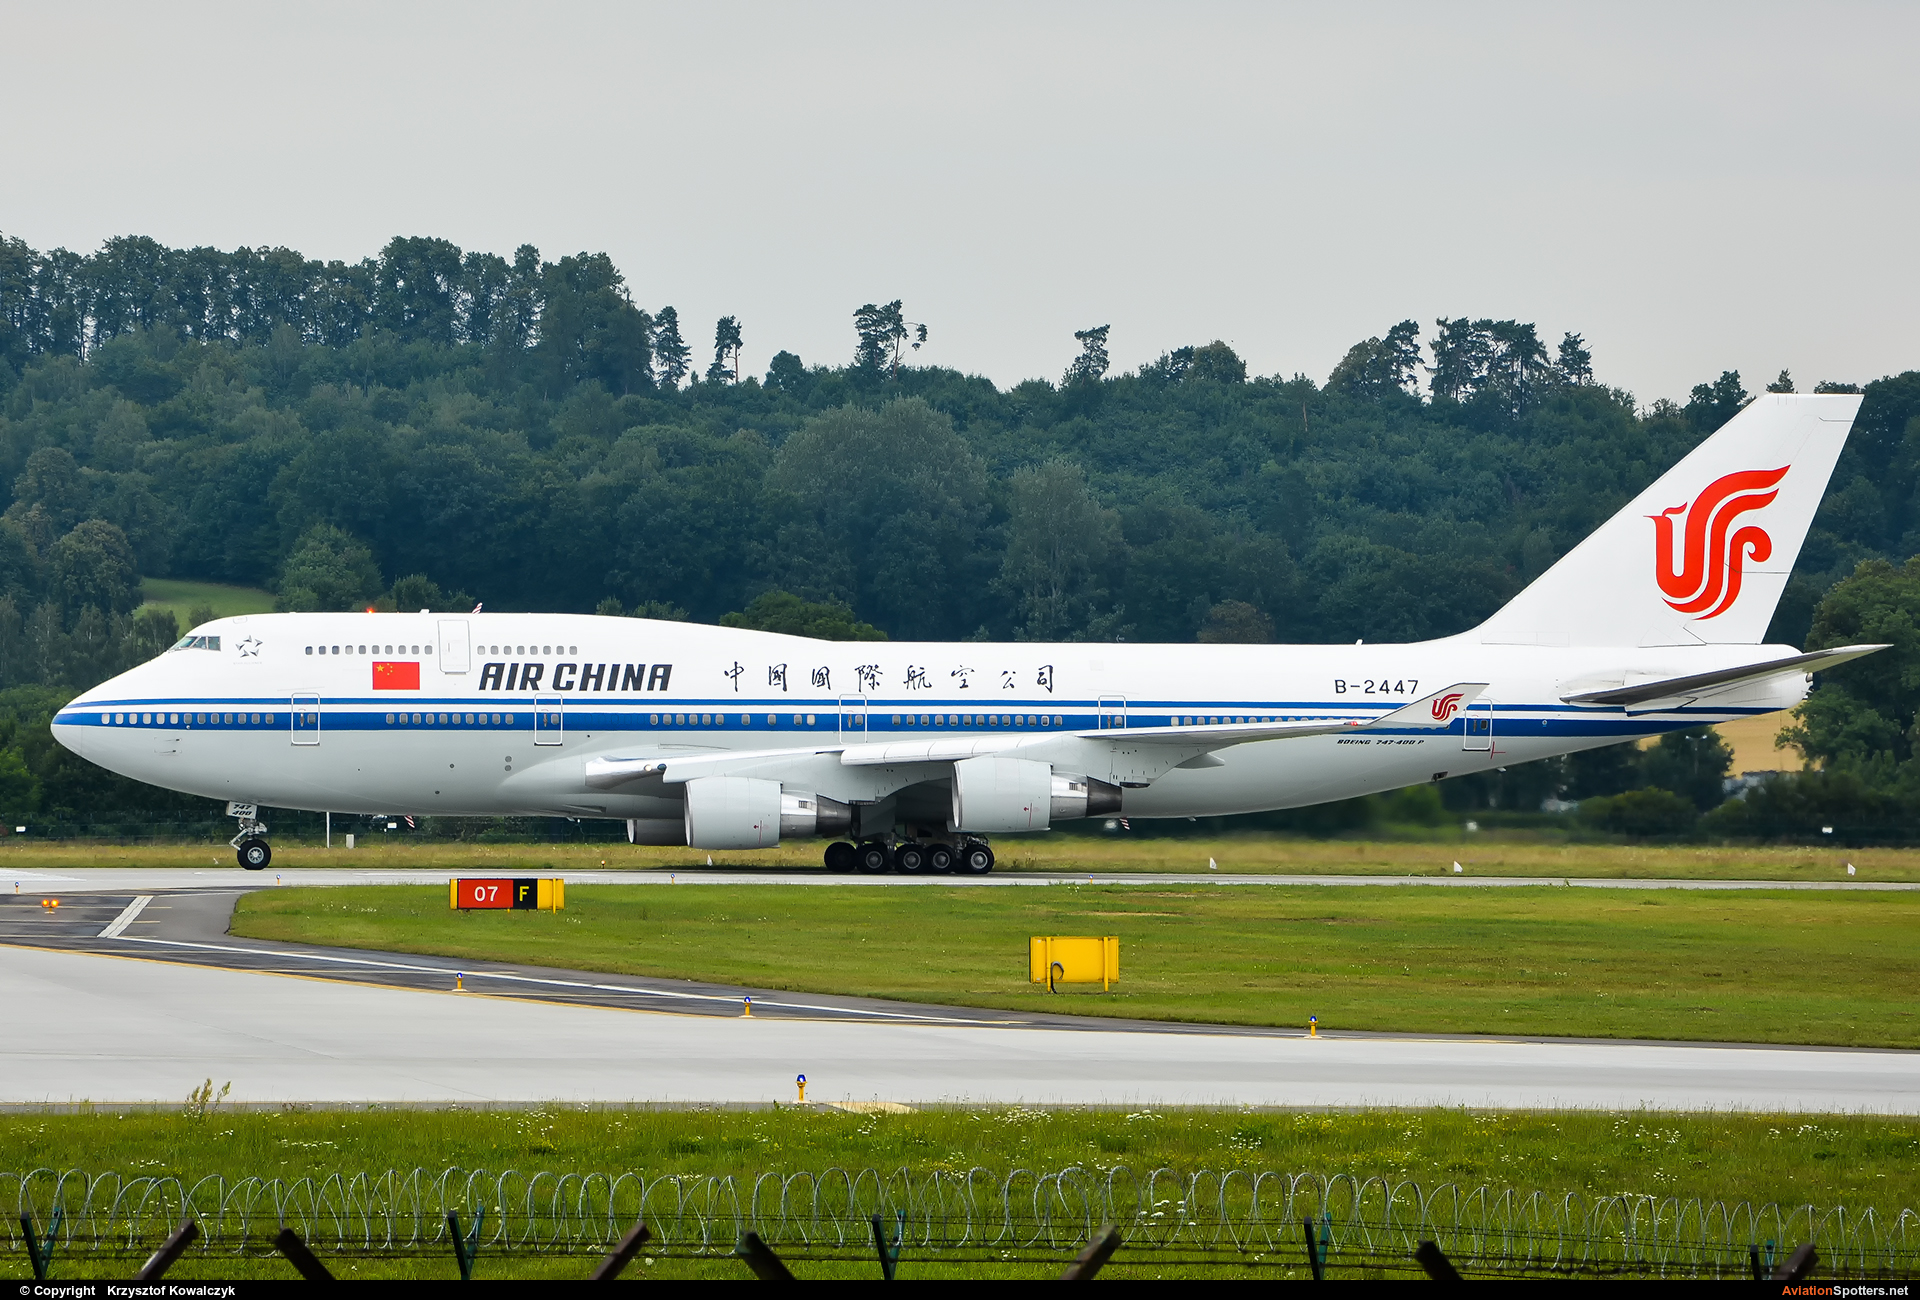 Air China  -  747-400  (B-2447) By Krzysztof Kowalczyk (Krzysztof Kowalczyk)